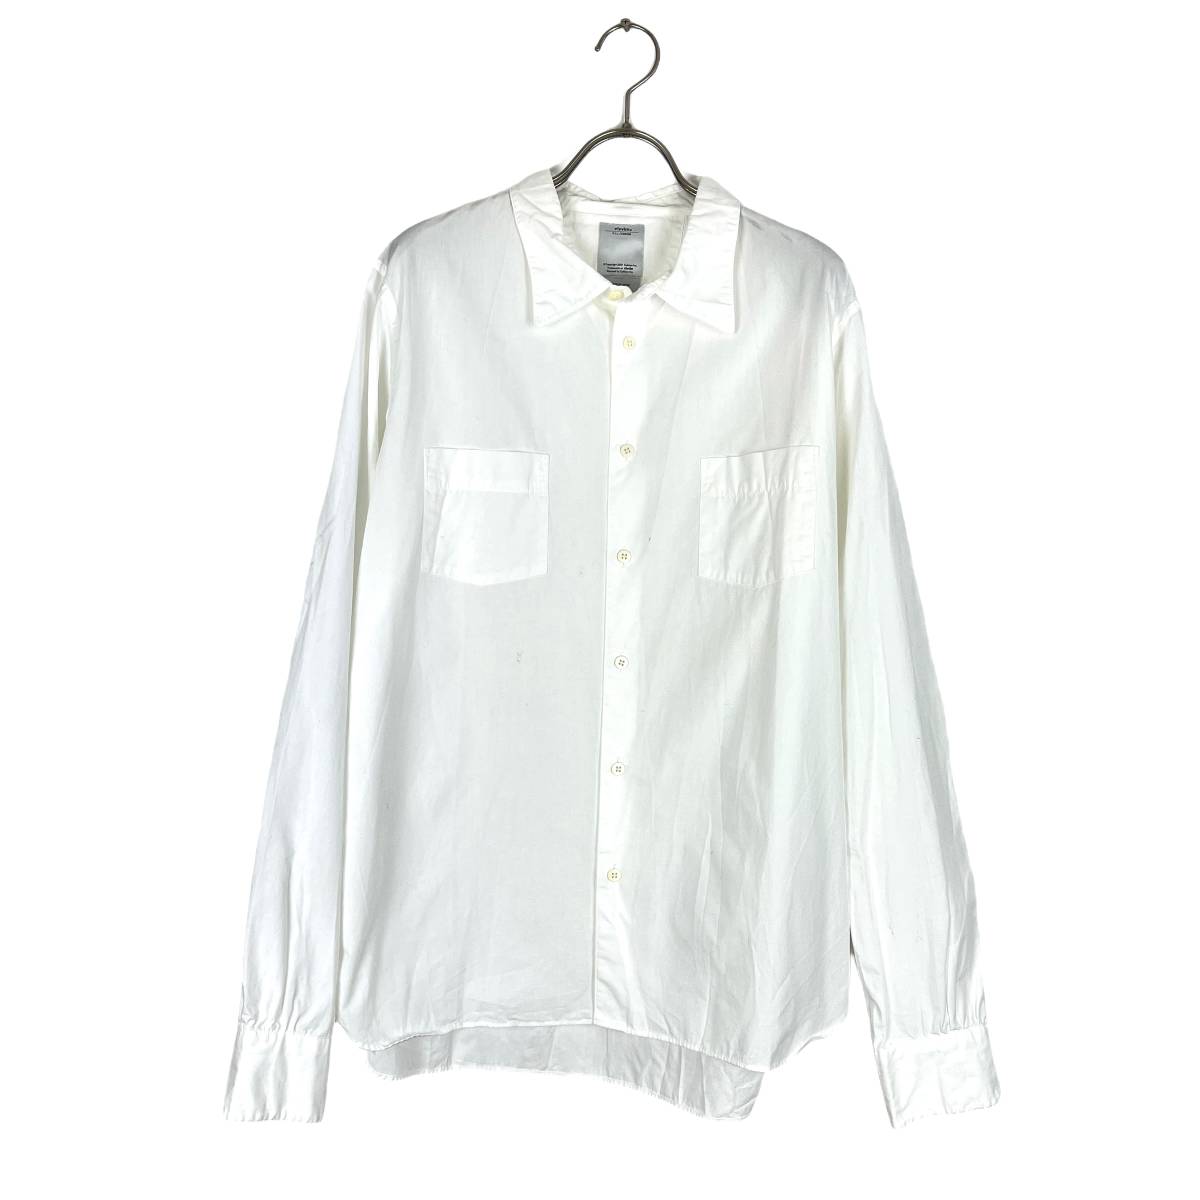 VISVIM(ビズビム) GEKKO DRESS CHAMBRAY L/S 16AW (white) 0